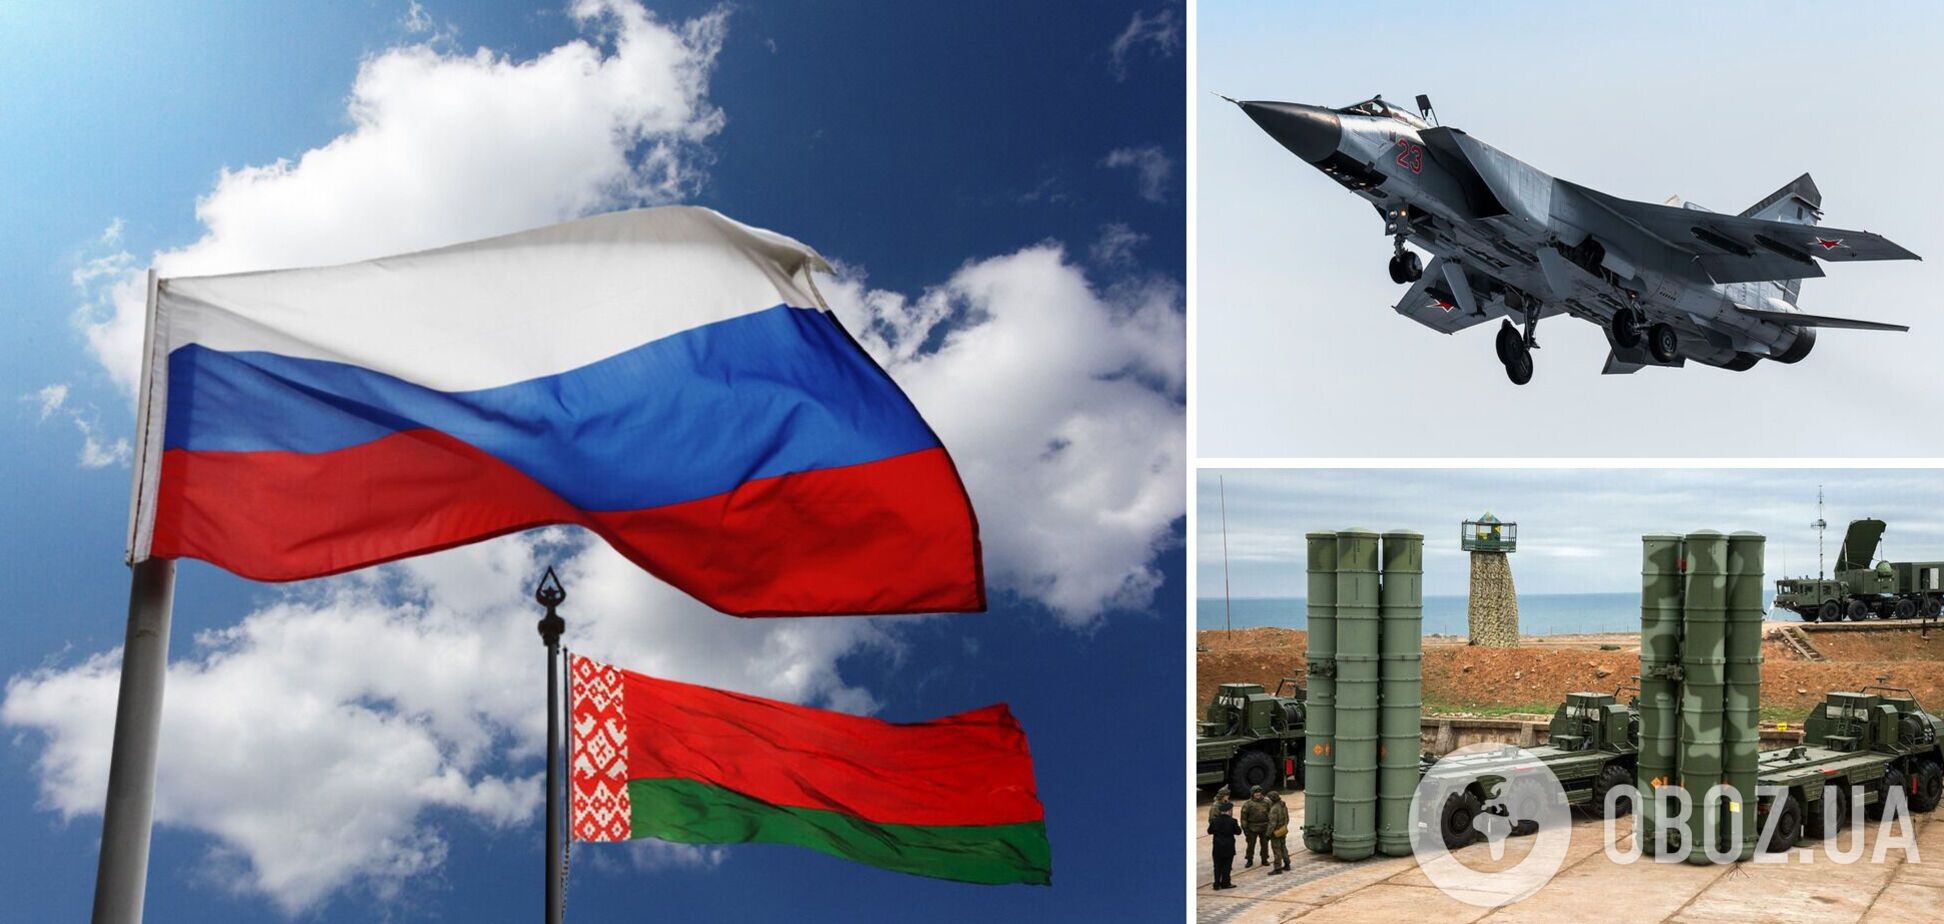 Россия поставит в Беларусь истребители, вертолеты и средства ПВО: появились подробности